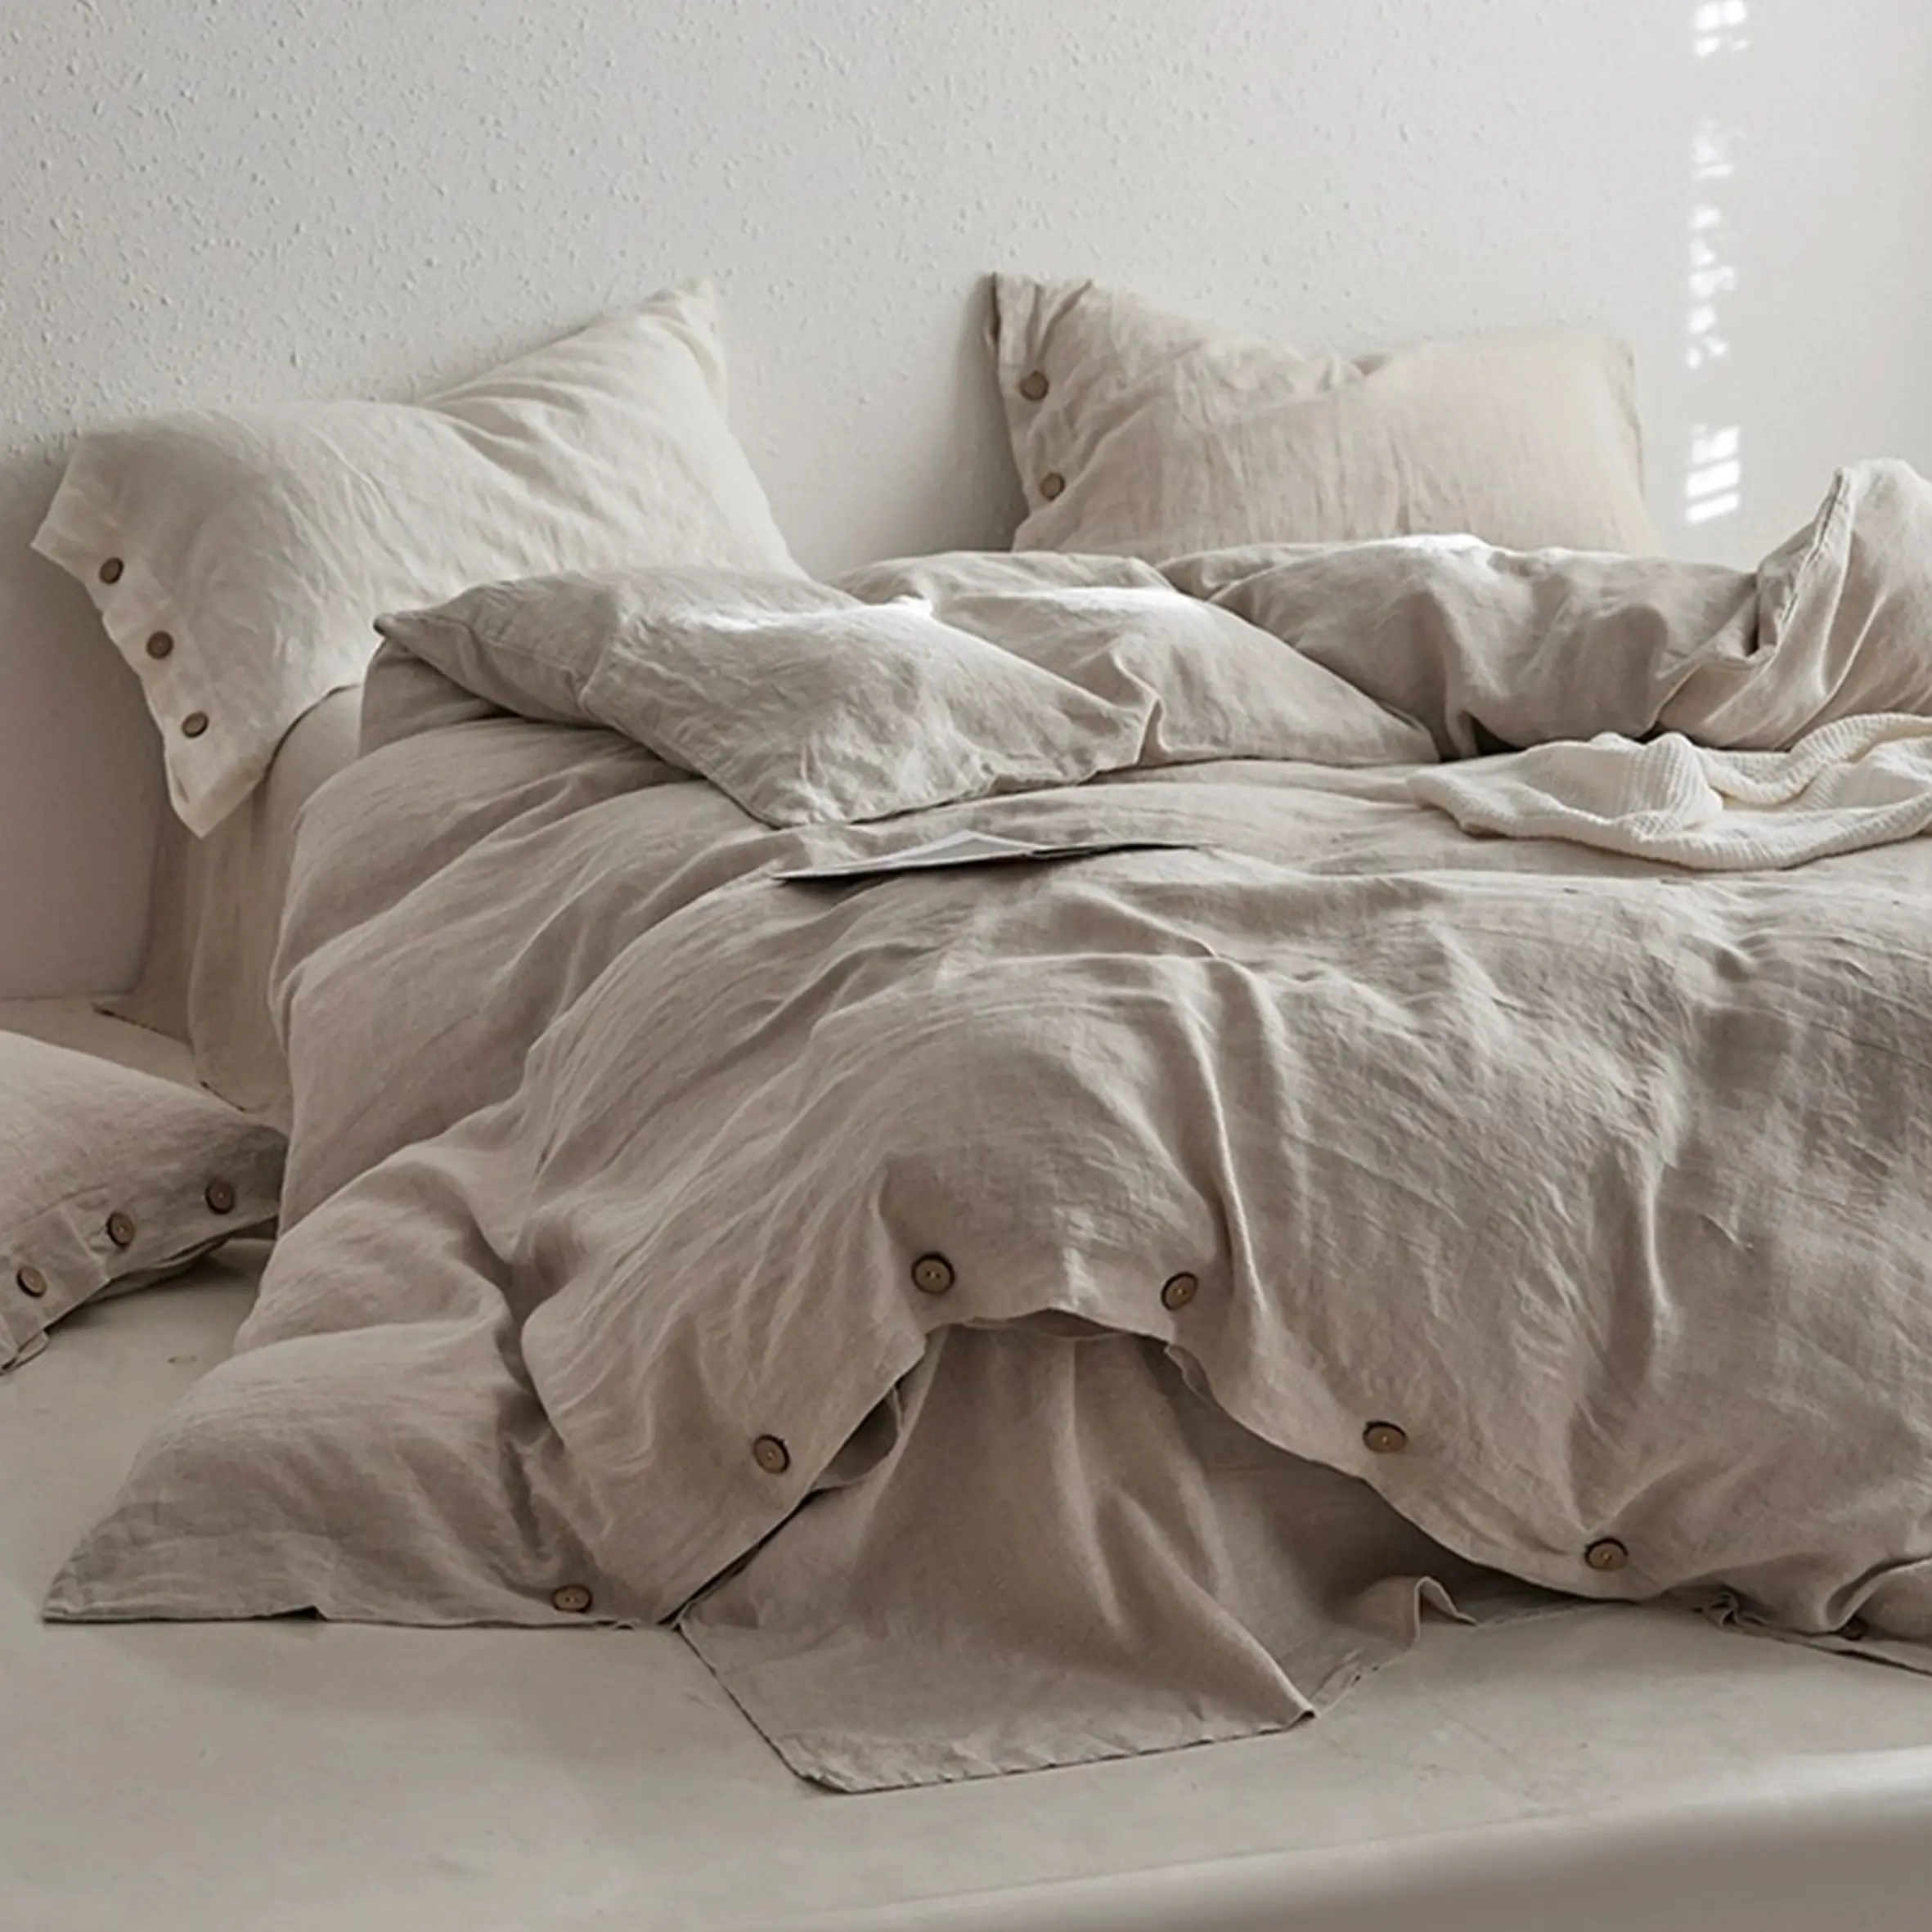 Dernier design personnalisé couette couettes draps de lit en satin linge de lit hôtel ensemble de literie